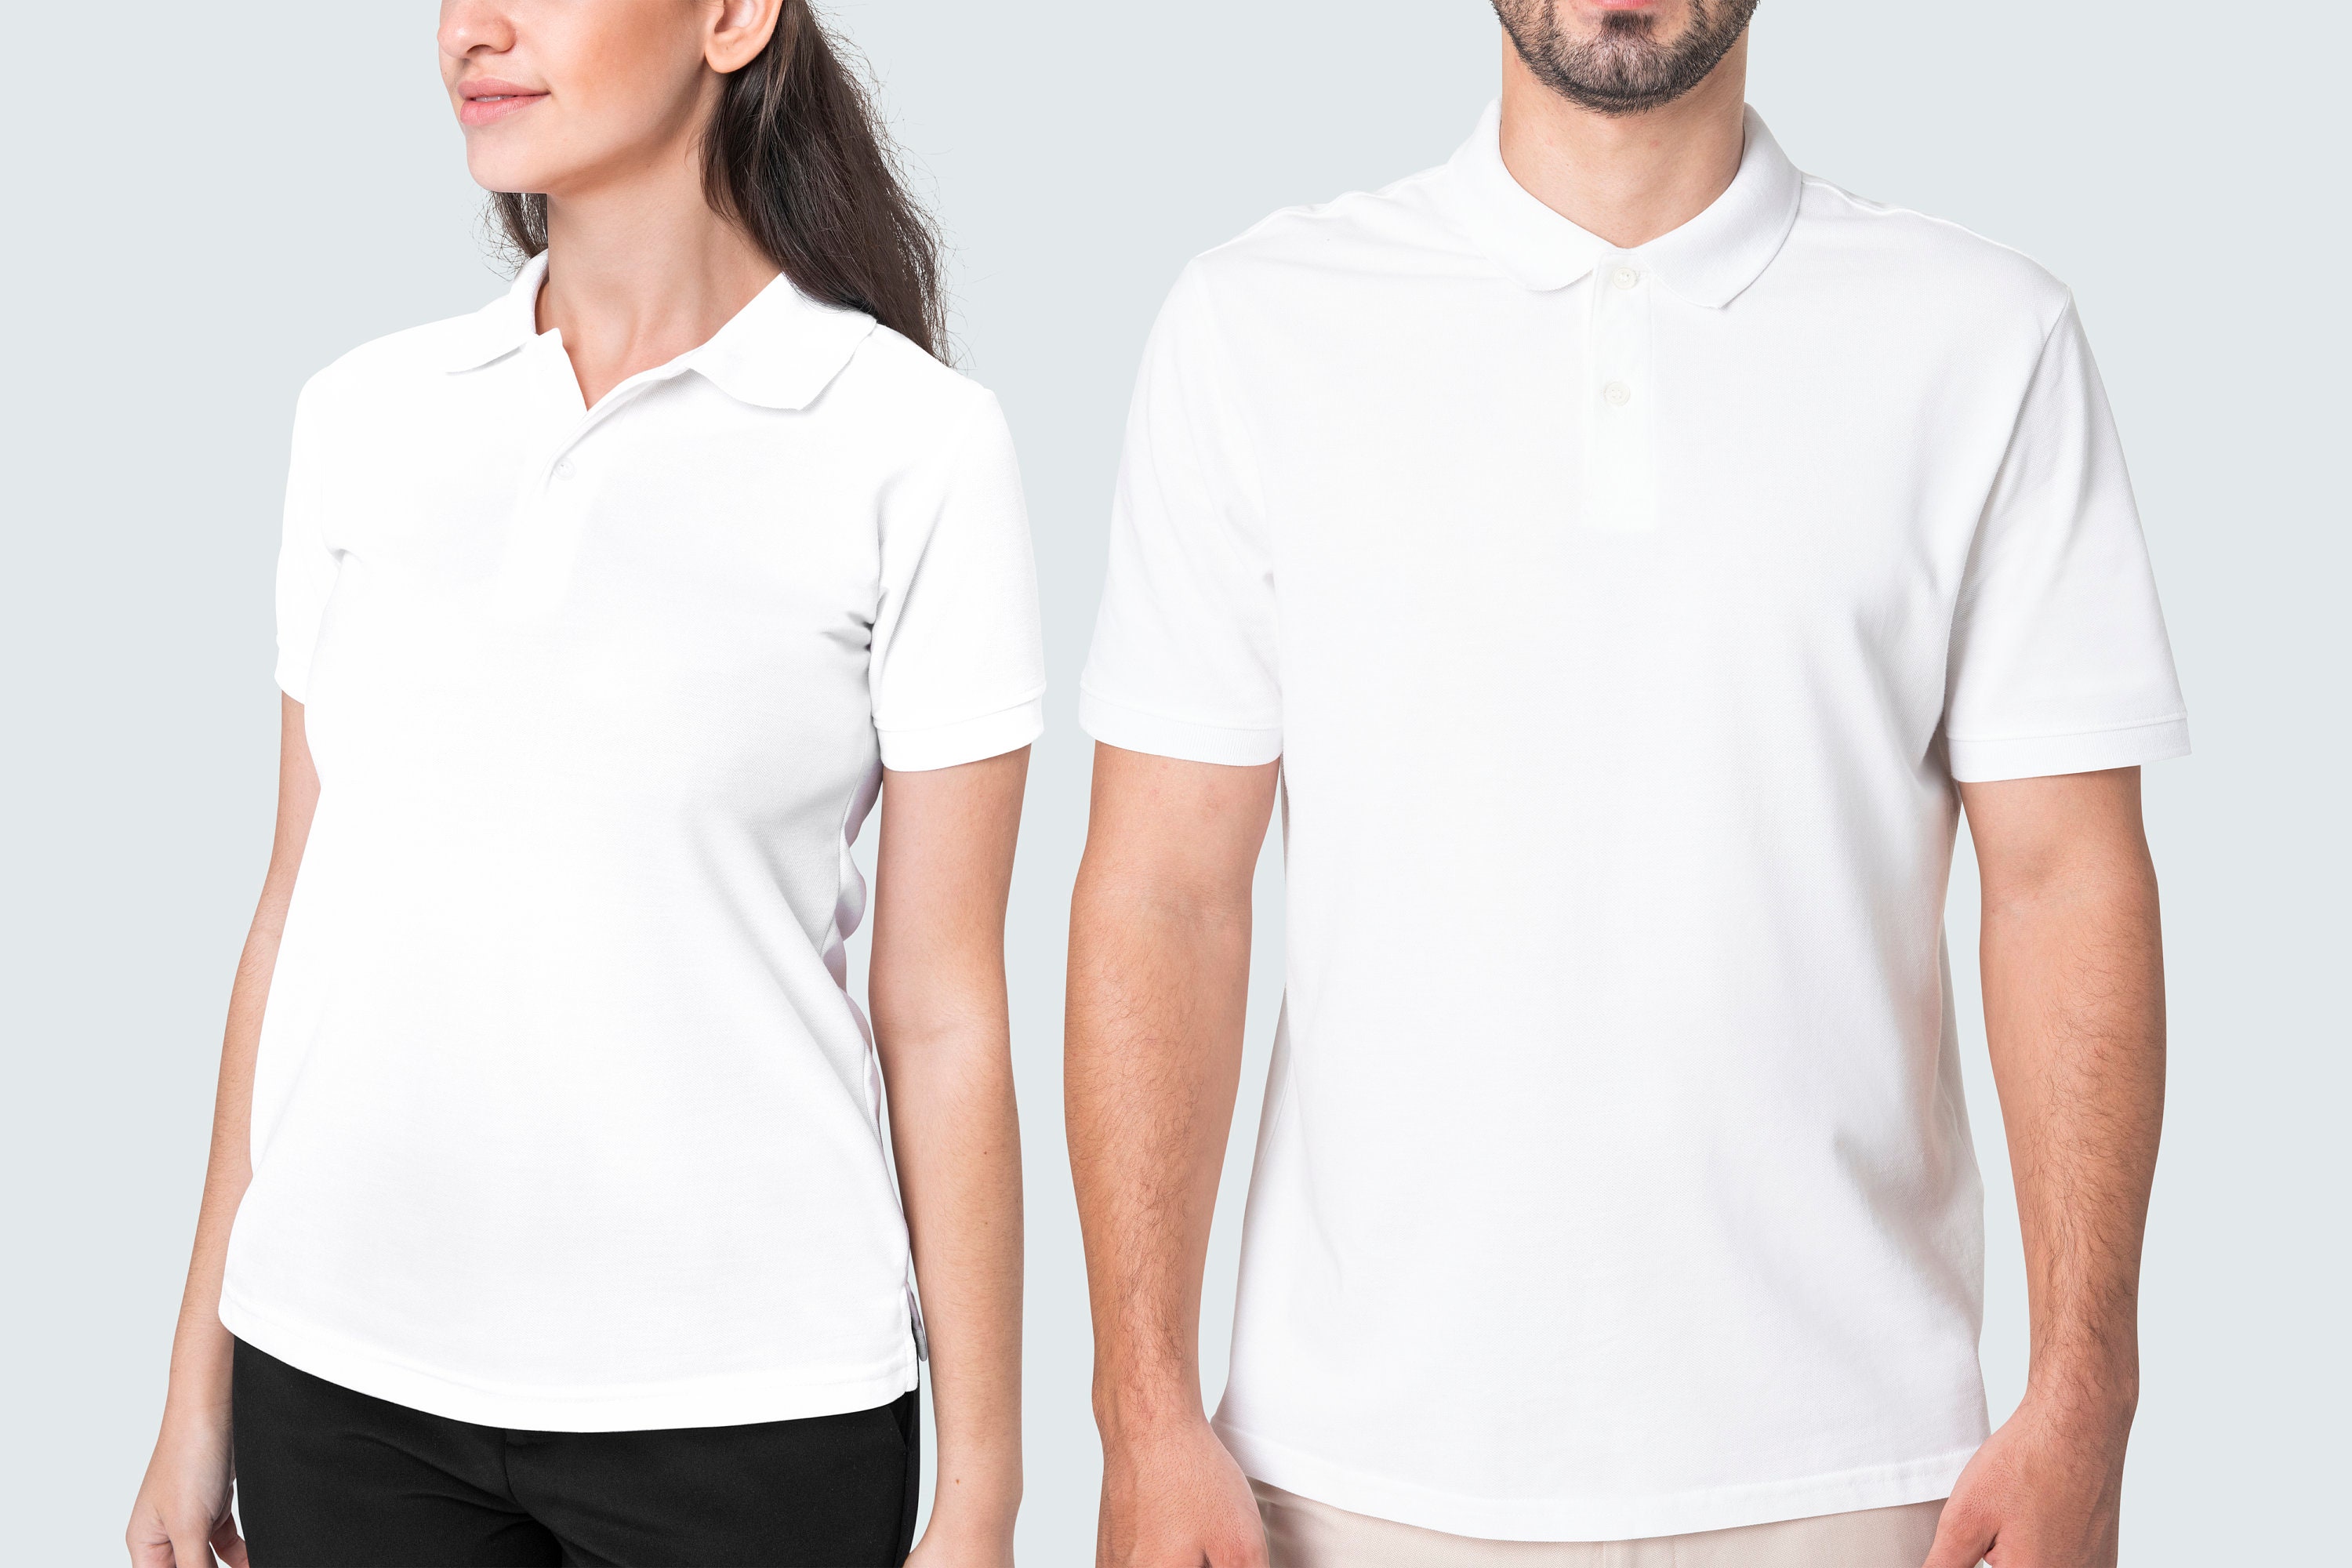 Kleding Gender-neutrale kleding volwassenen Tops & T-shirts Polos Aangepast geborduurd poloshirt Uneek gepersonaliseerd met uw tekst of logo Workwear UC101 borduurwerk afdrukken UNISEX 